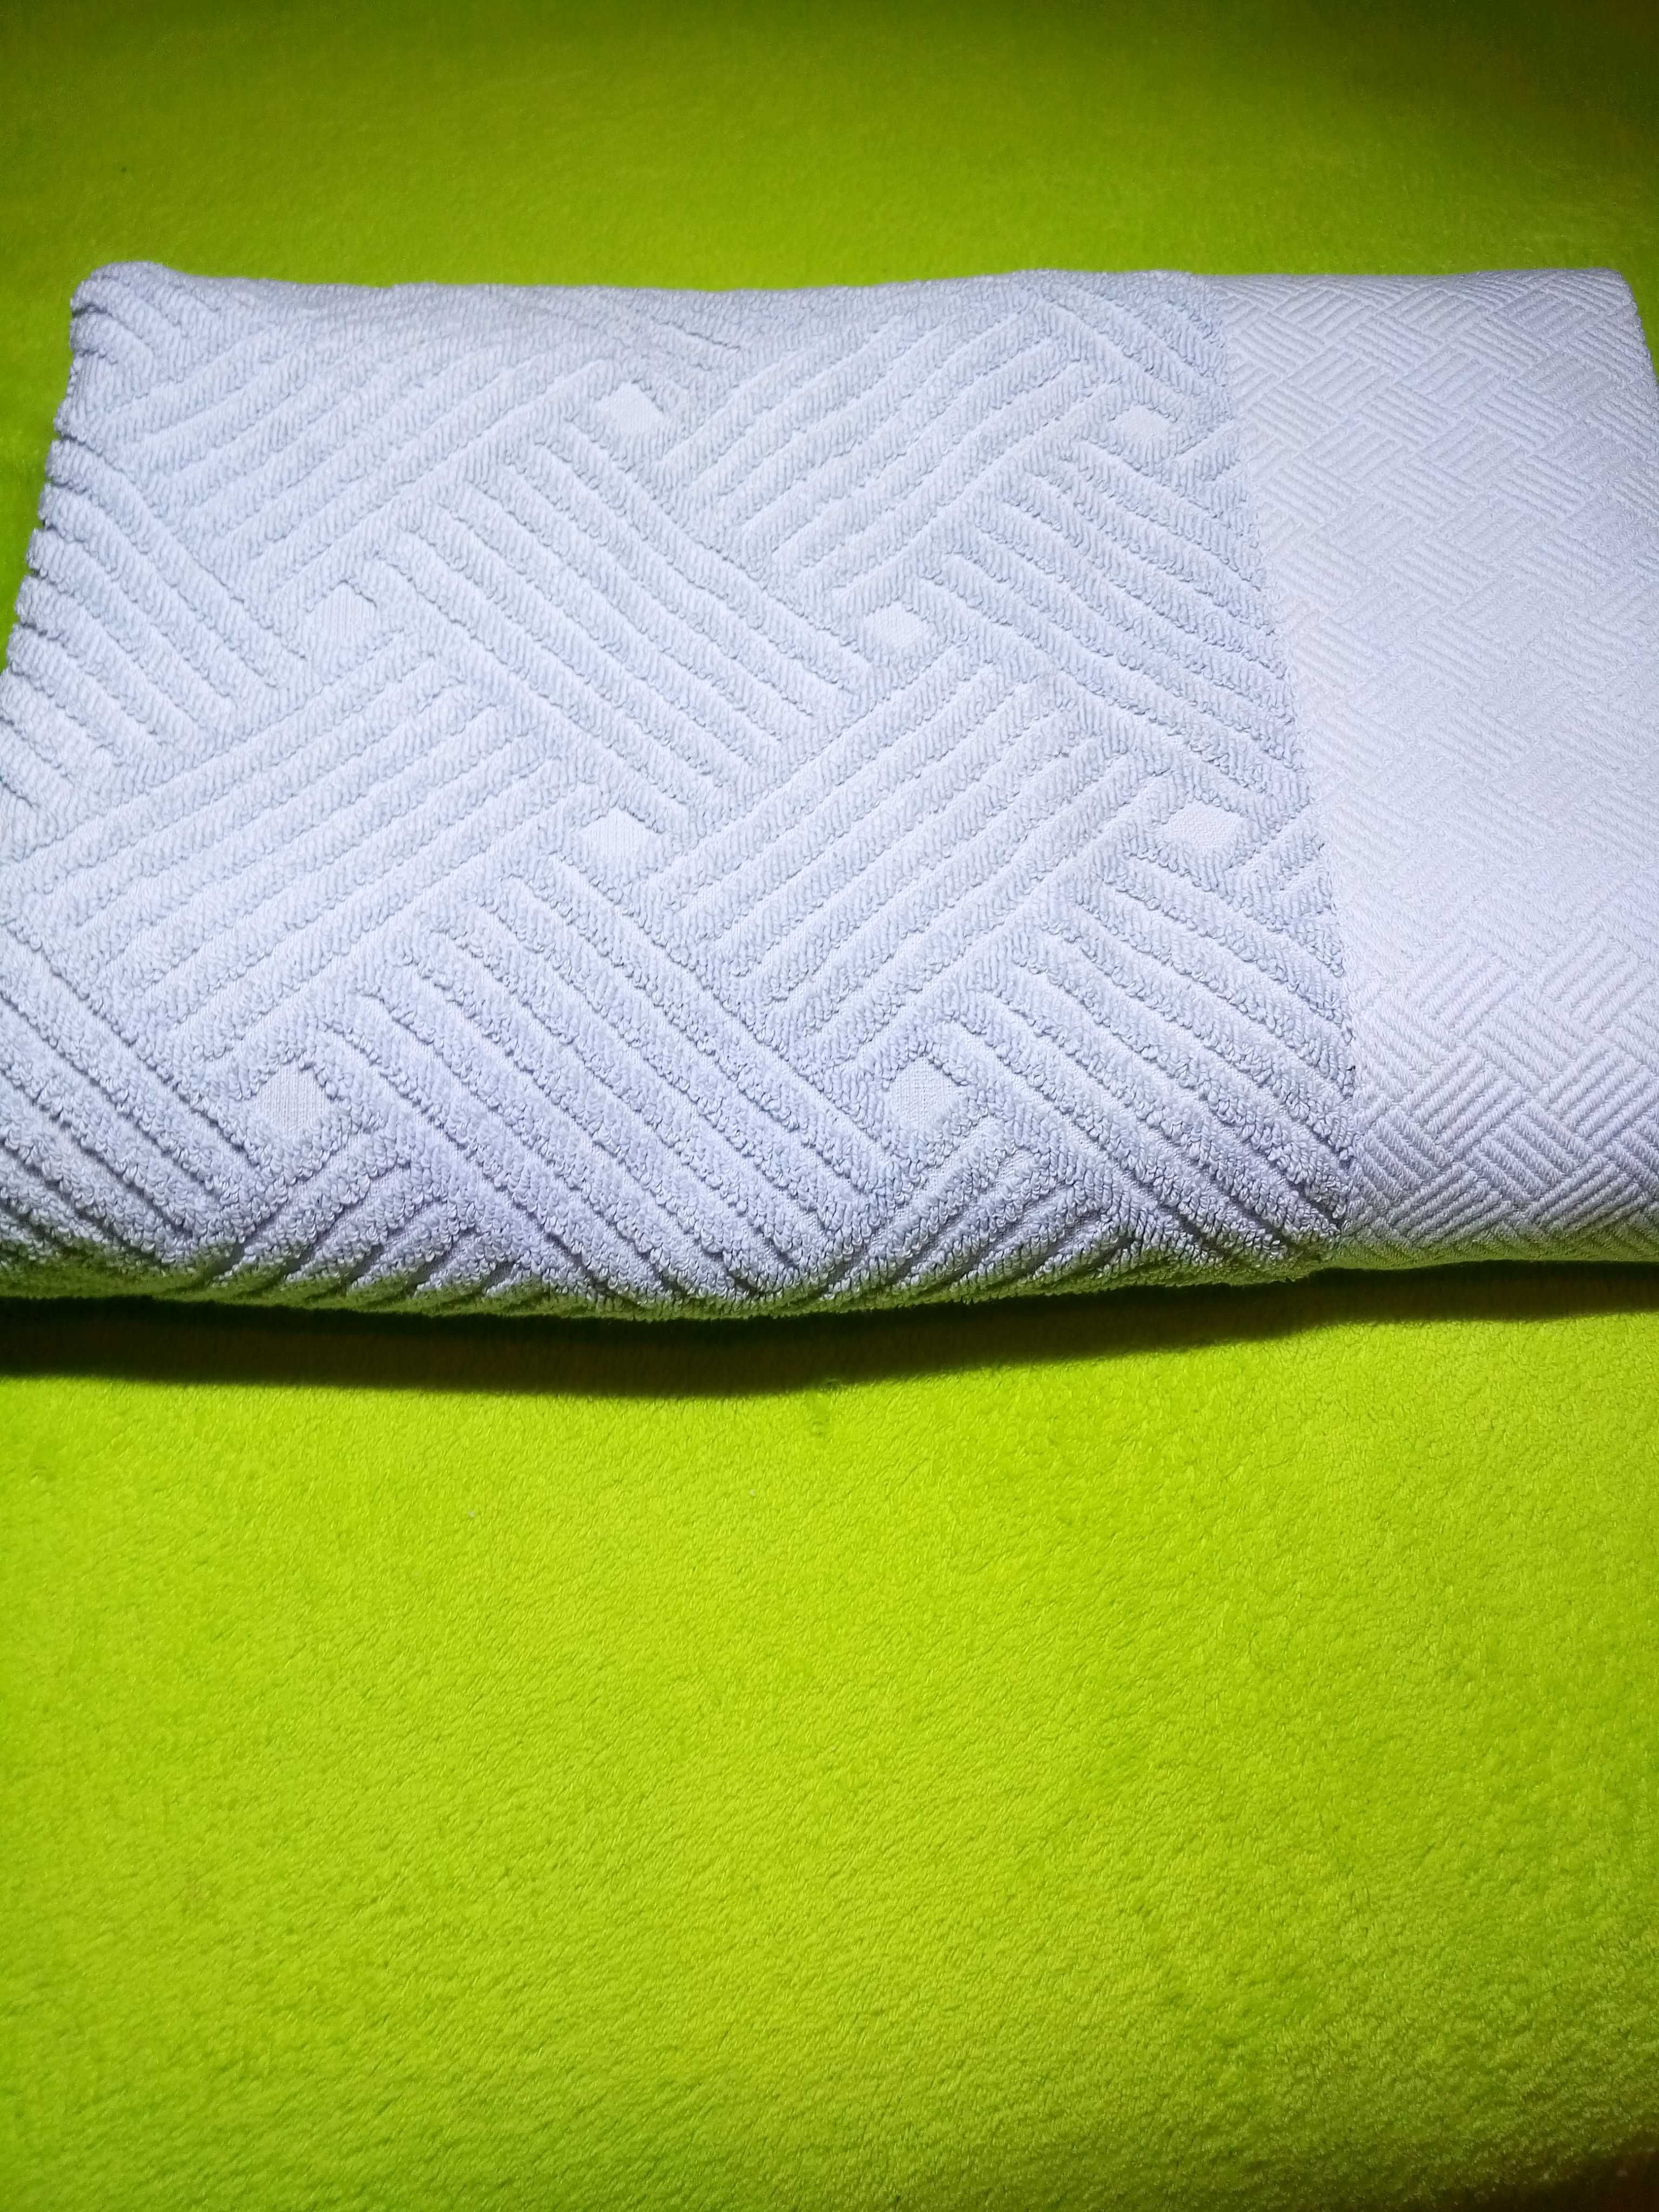 Турецкое банное полотенце Saheser 140*70см cotton махра высокого качес